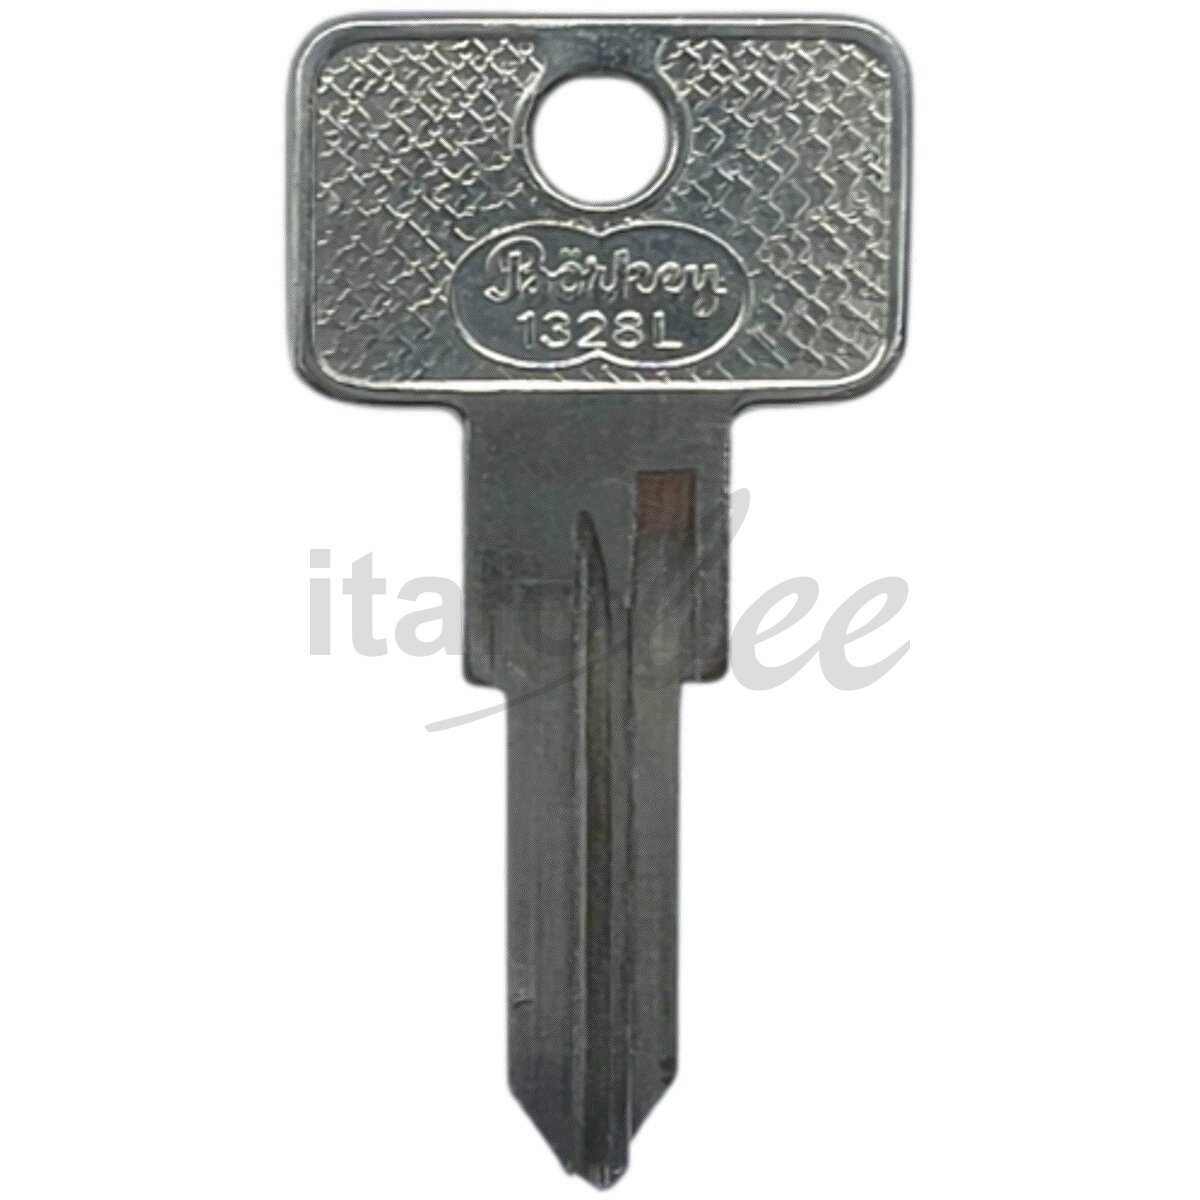 Schlüsselrohling für Zündschloss - italobee Shop, 10,82 €